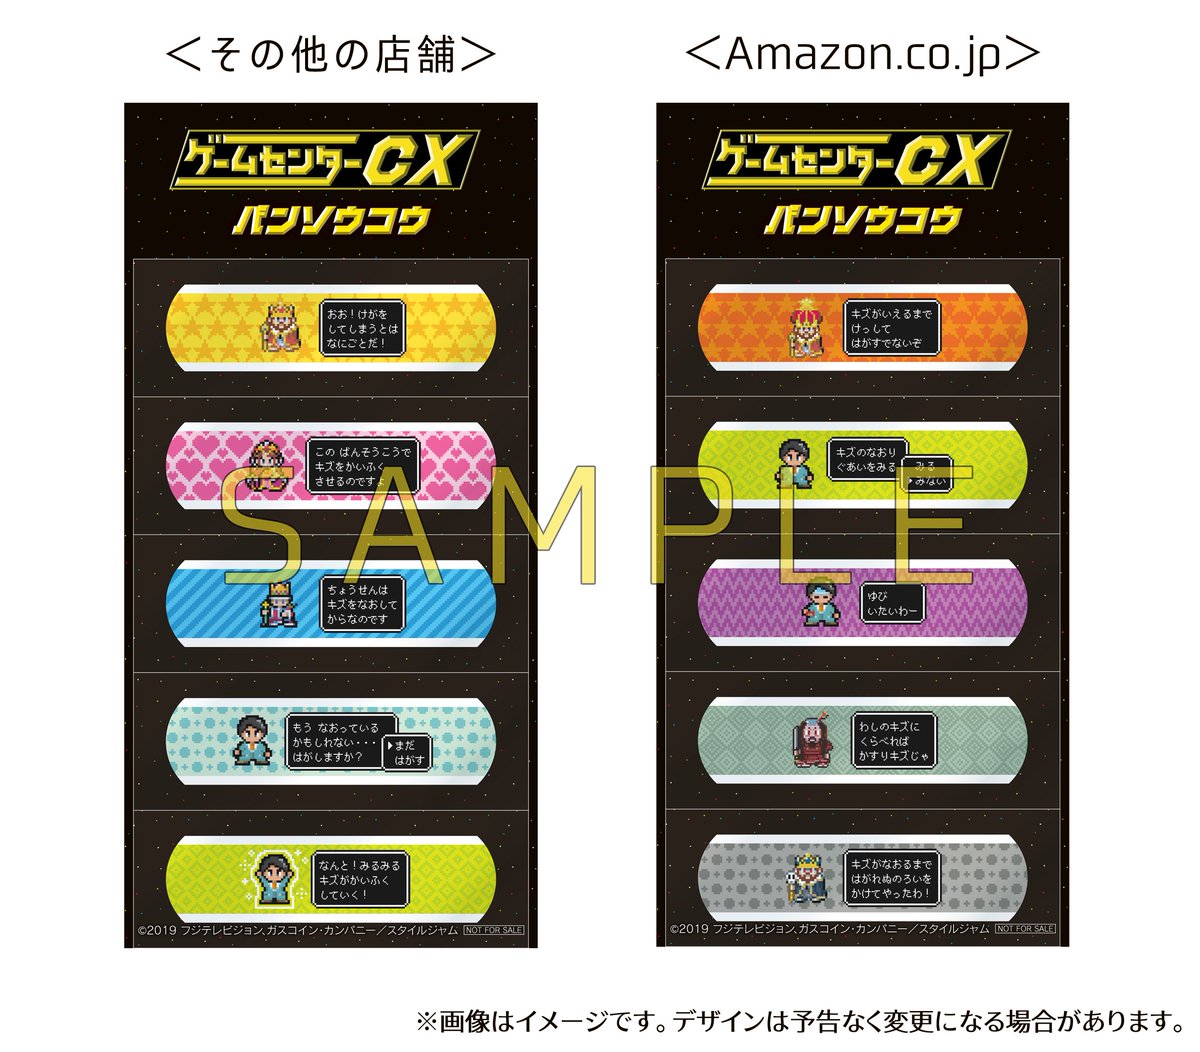 ゲームセンターcx Dvd Box16 の先着購入特典 オリジナル絆創膏 のデザインが公開